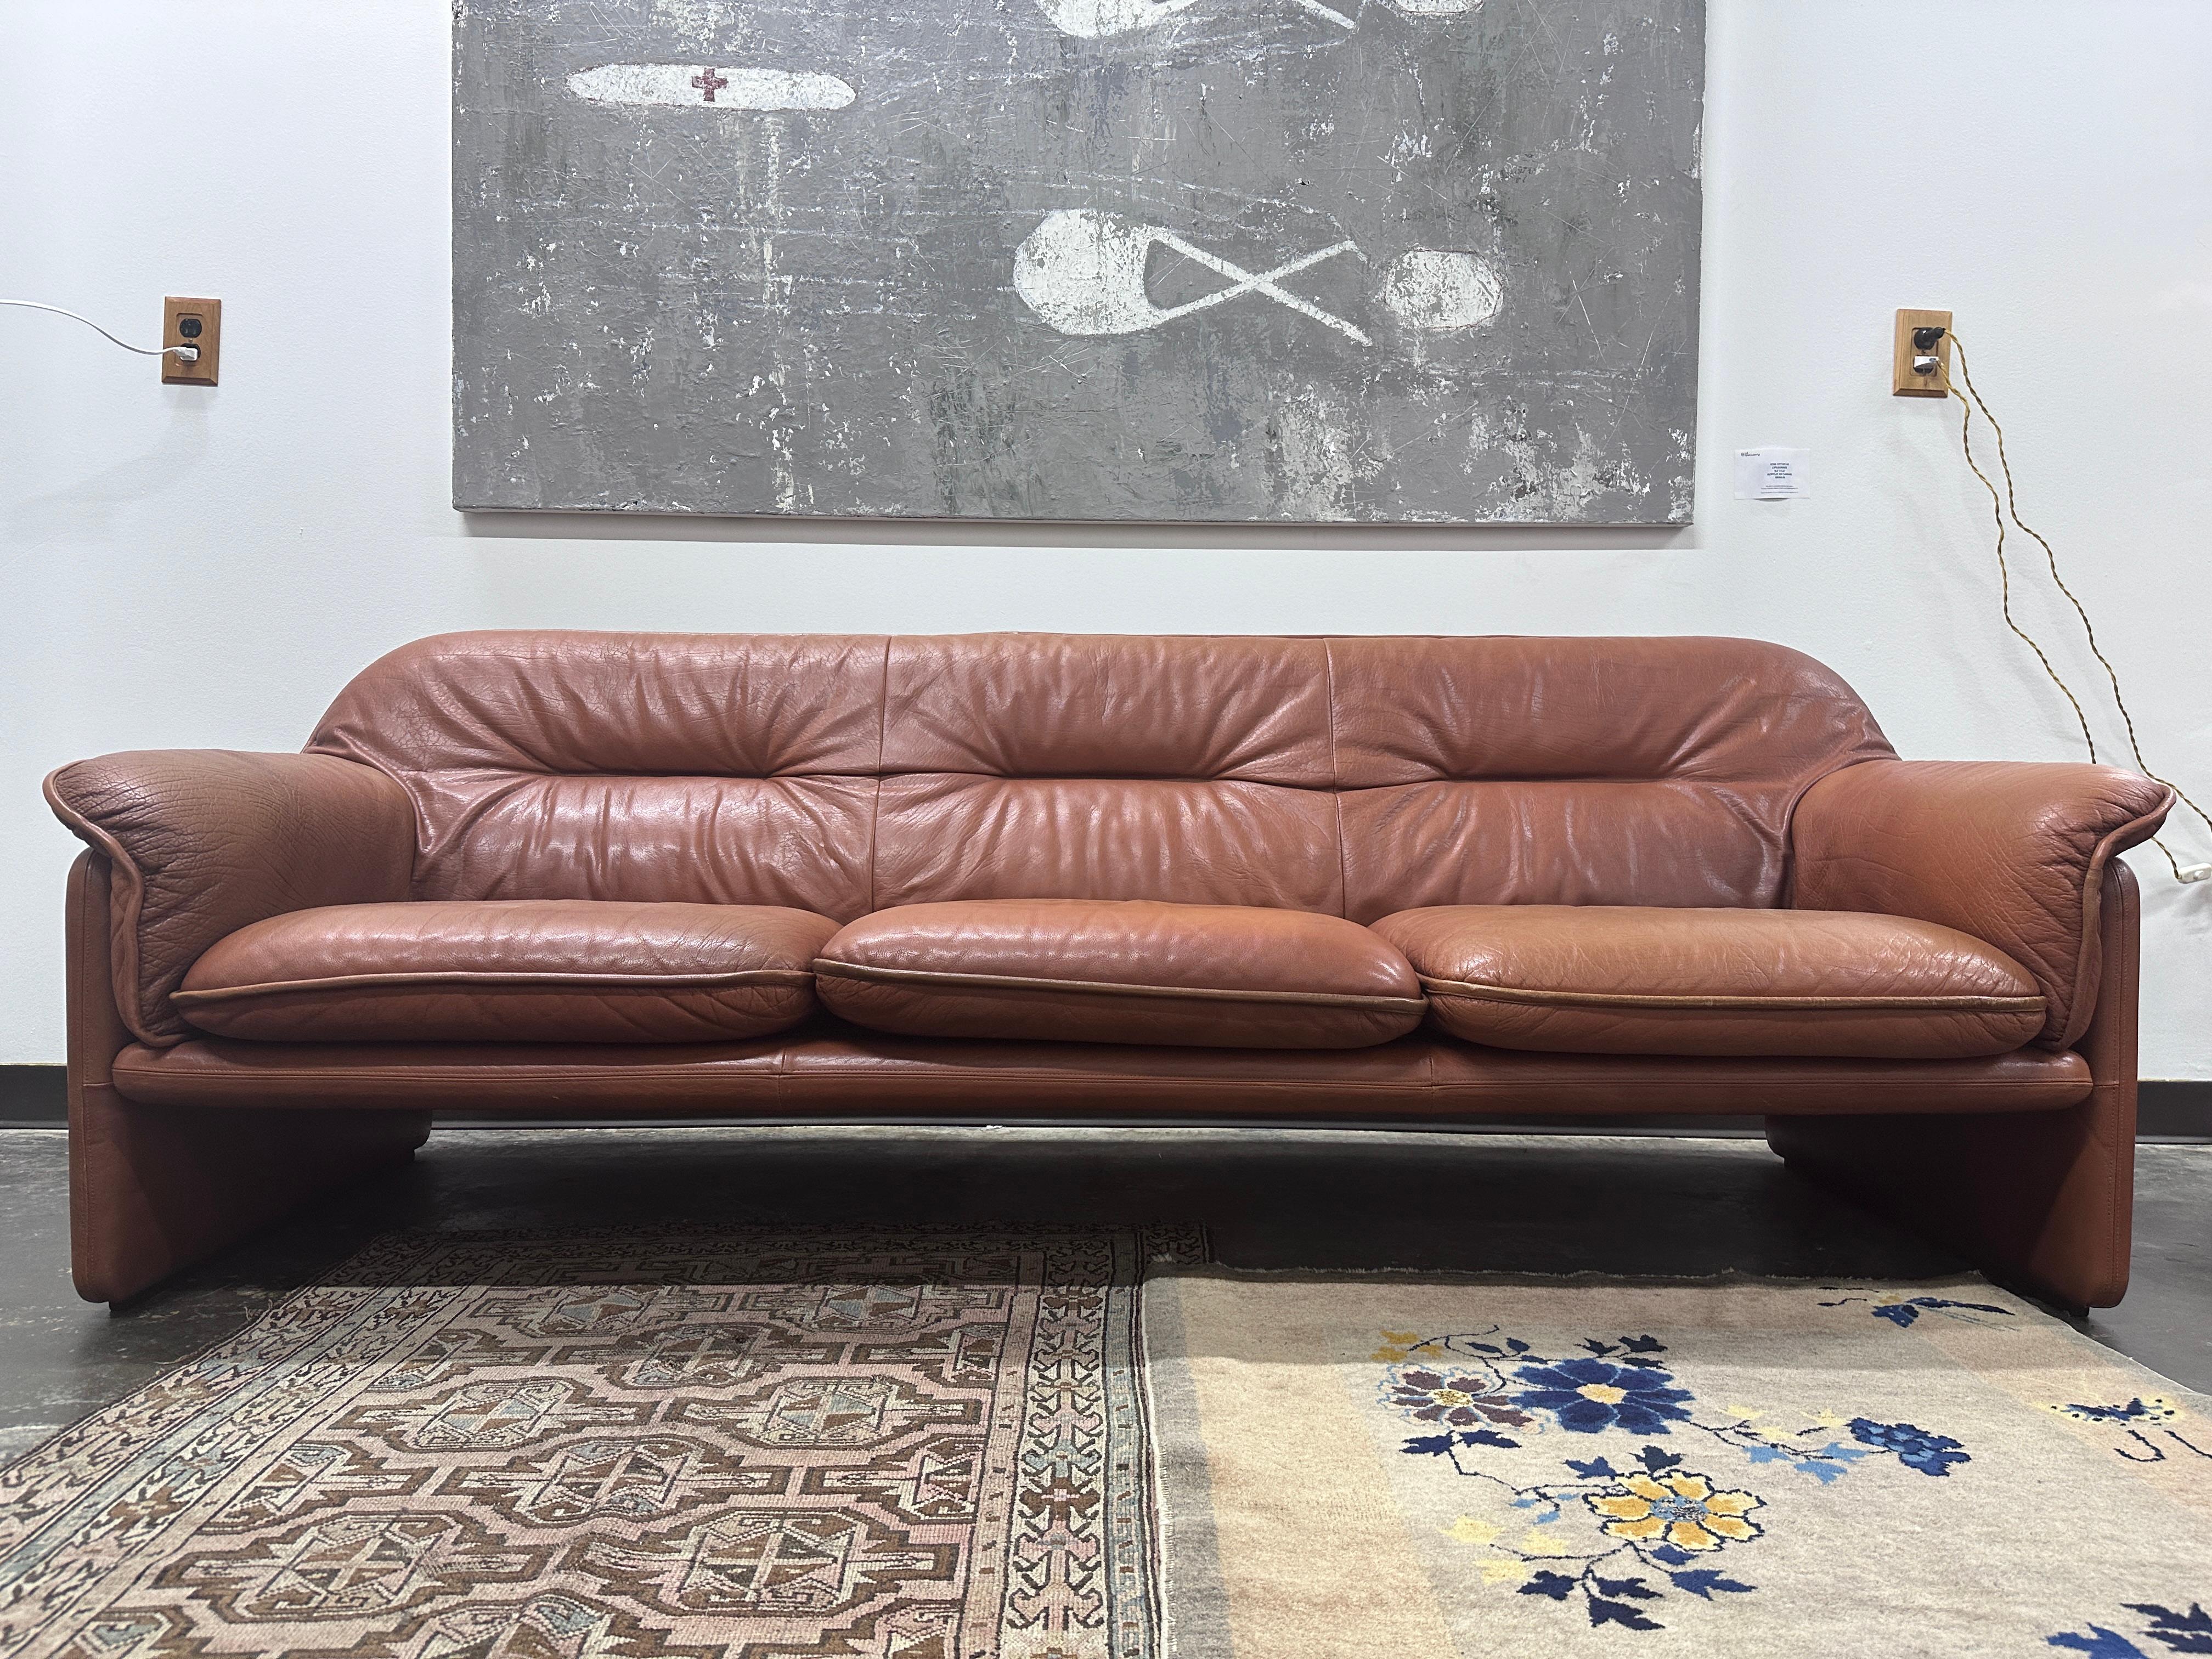 DS16 Dreisitzer-Sofa von De Sede in hervorragendem Vintage-Zustand. Es gibt kleinere Flecken und Verschleiß im Einklang mit dem Alter. Das Rückenkissen ist ein großes, abnehmbares Stück, und es gibt drei Sitzkissen.